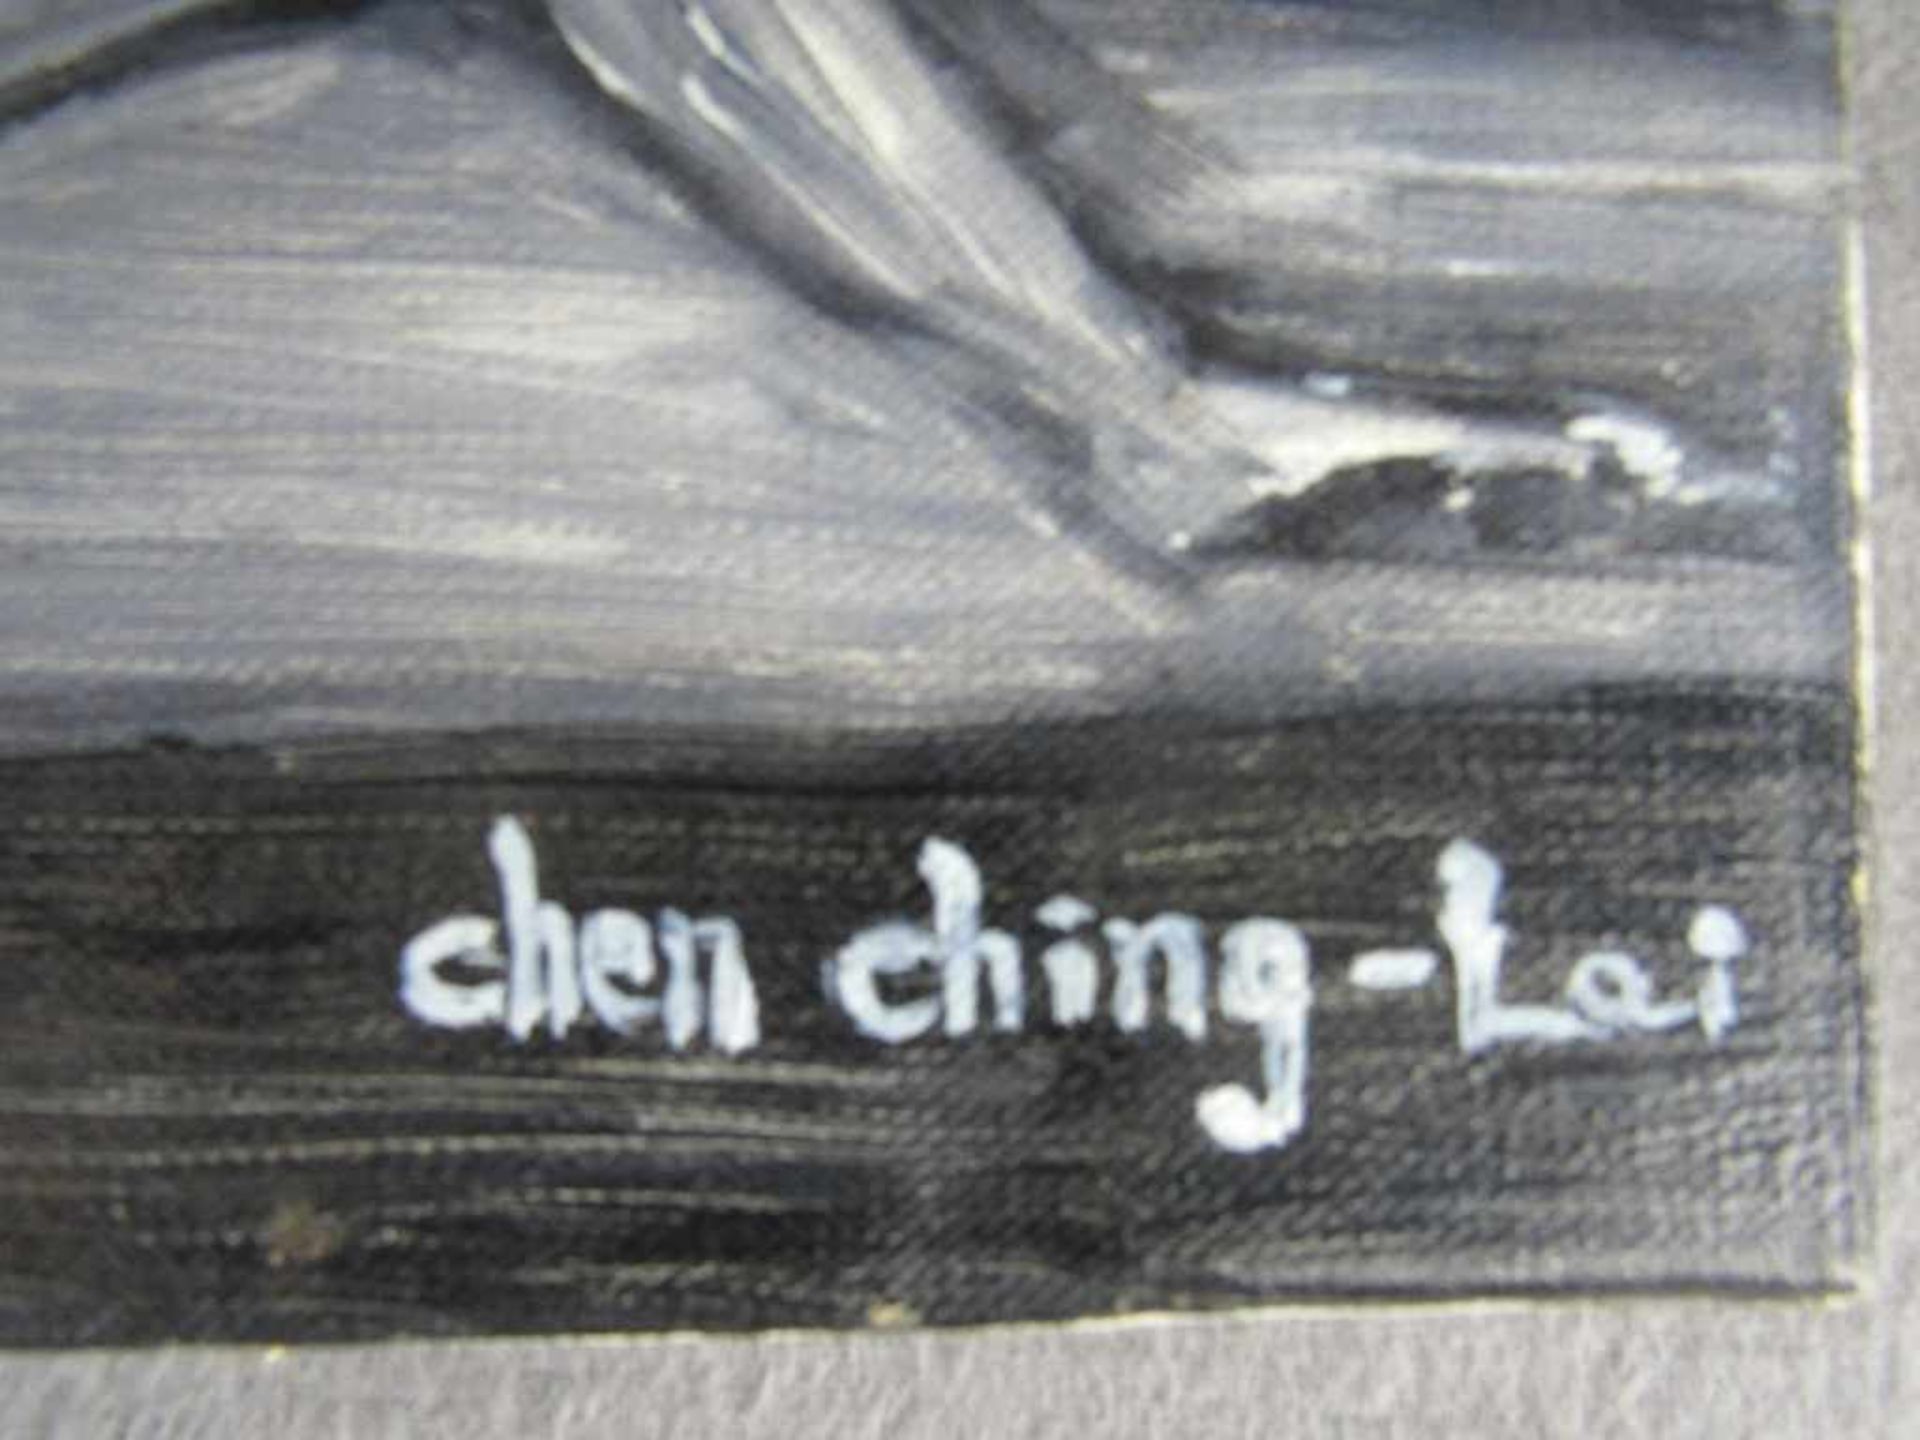 Ölgemälde Öl auf Leinwand Aktszenerie signiert Chen Ching-Lai 35x45cm- - -20.00 % buyer's premium on - Bild 2 aus 3